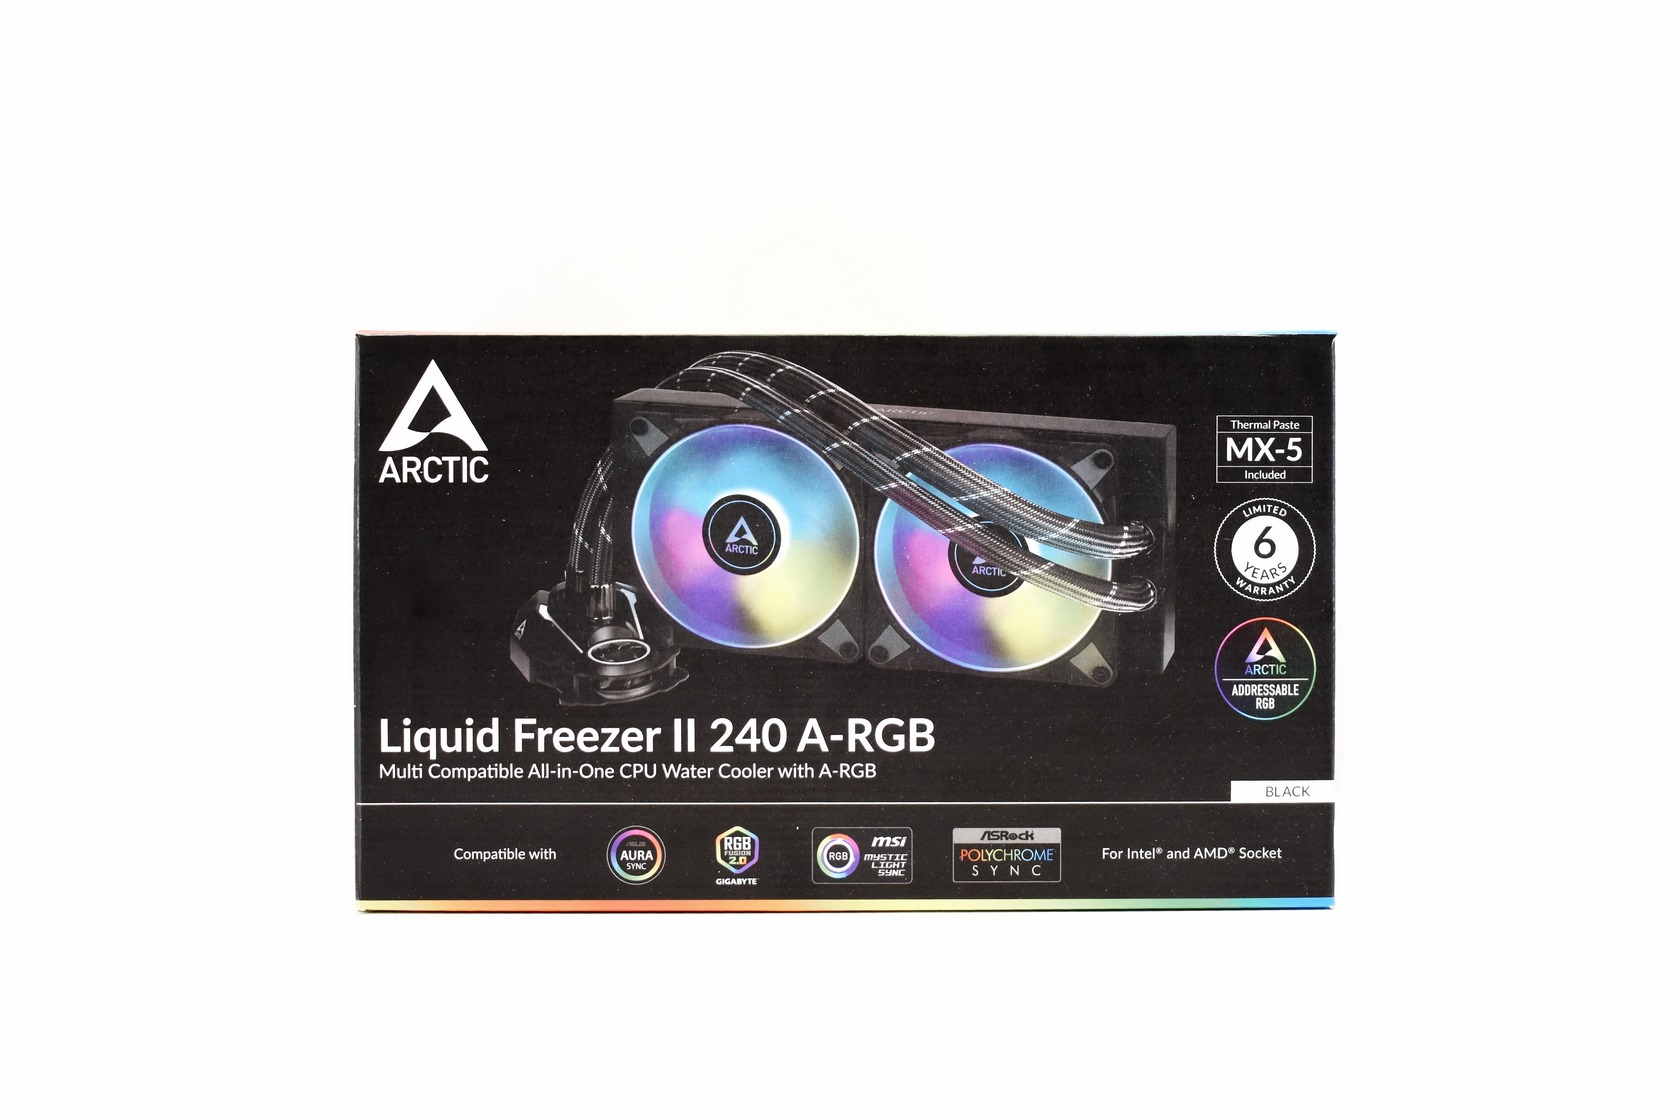 Arctic Liquid Freezer II 240 A-RGB review